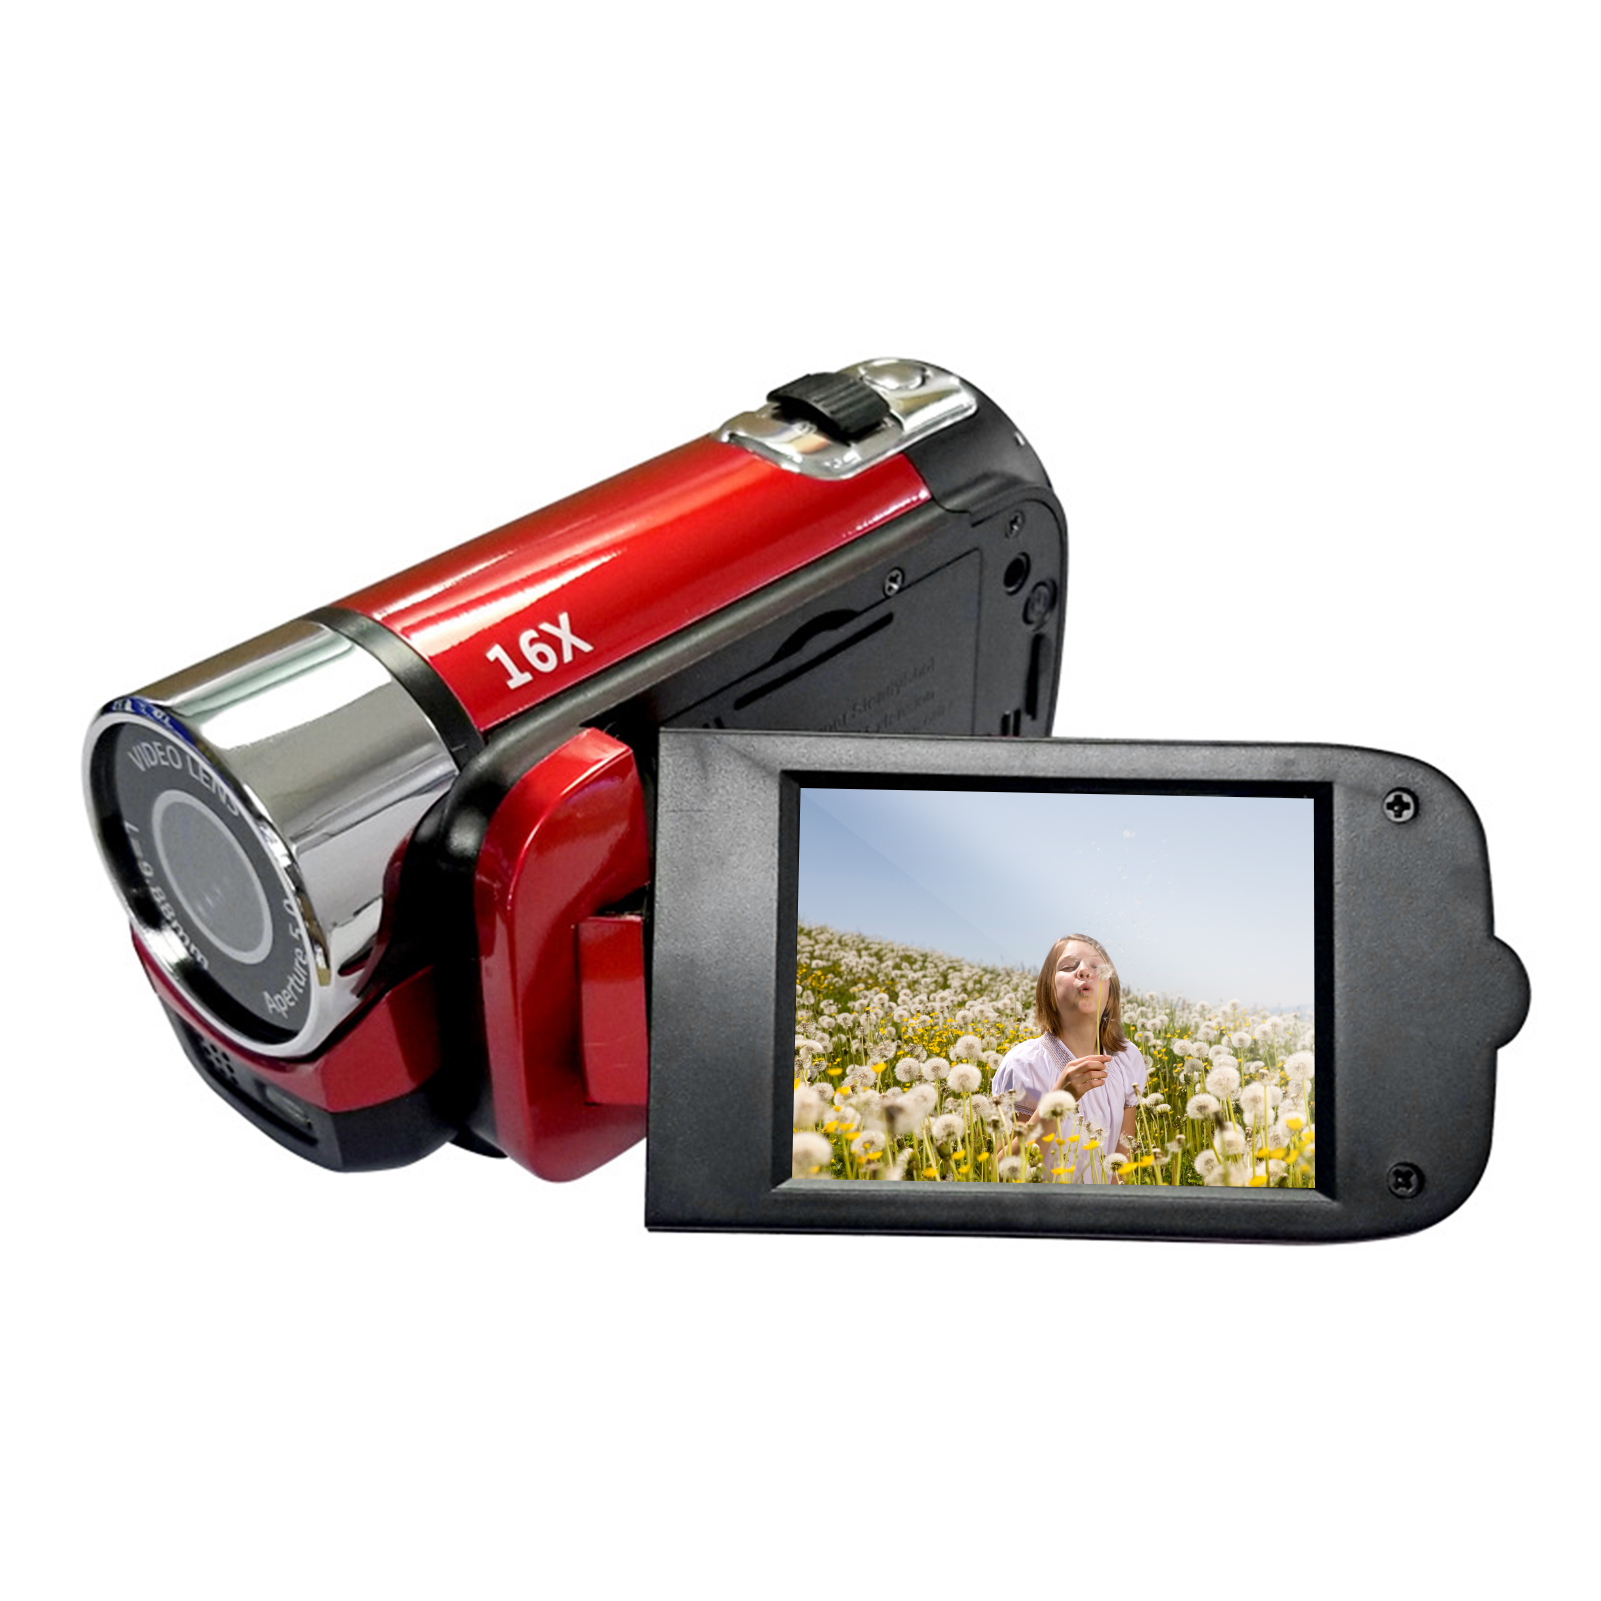 Videocamera digitale ad alta definizione portatile 1080P videocamera DV 16MP schermo LCD da 2.7 pollici Zoom digitale 16X batteria integrata: red